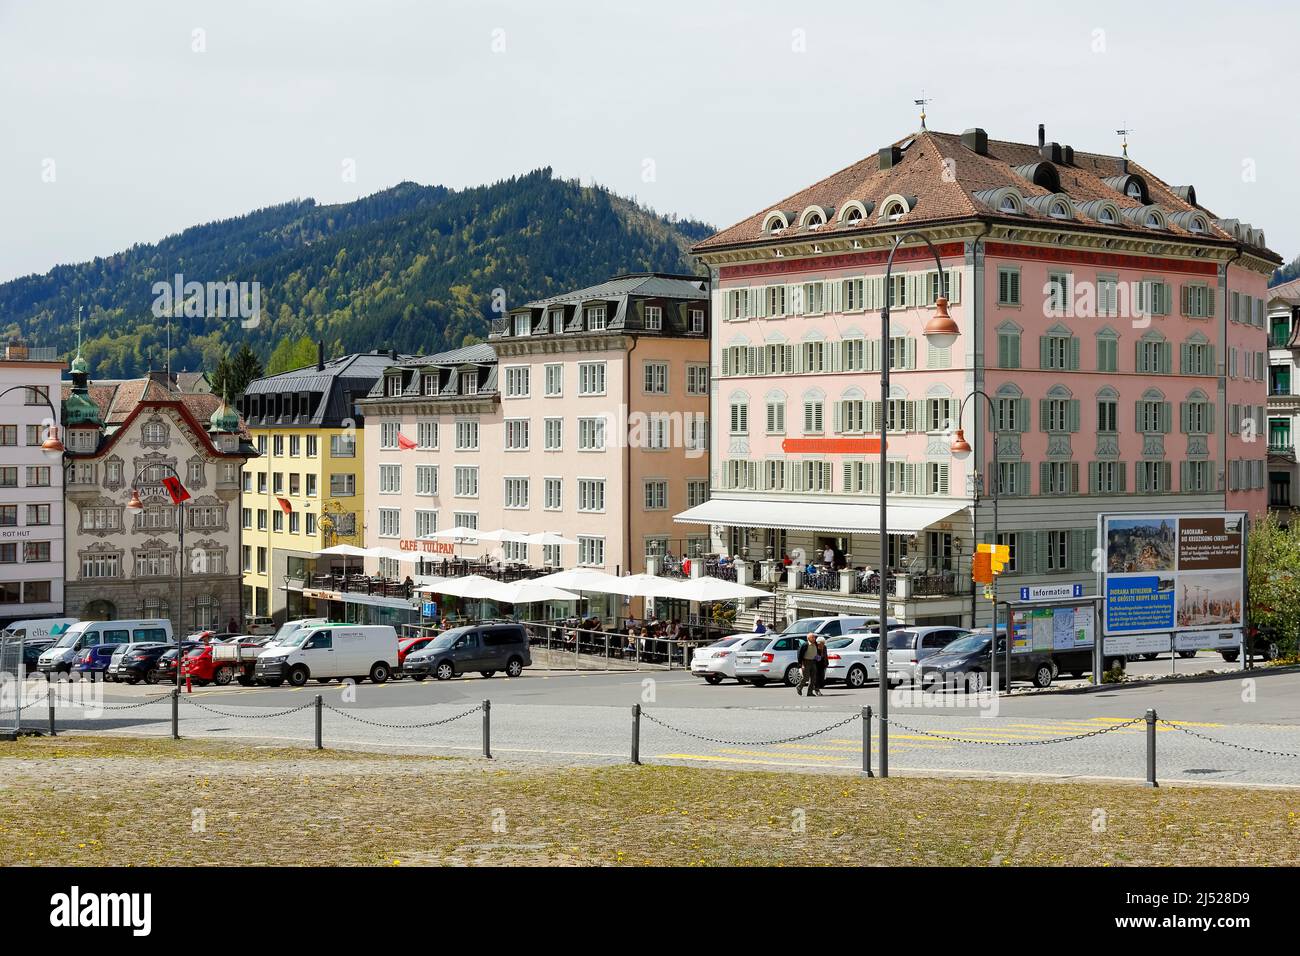 Einsiedeln, Suiza - 09 de mayo de 2016: Las fachadas de colores de los edificios y coches en la calle muestran una ciudad que es a menudo visitada por peregrinos y. Foto de stock